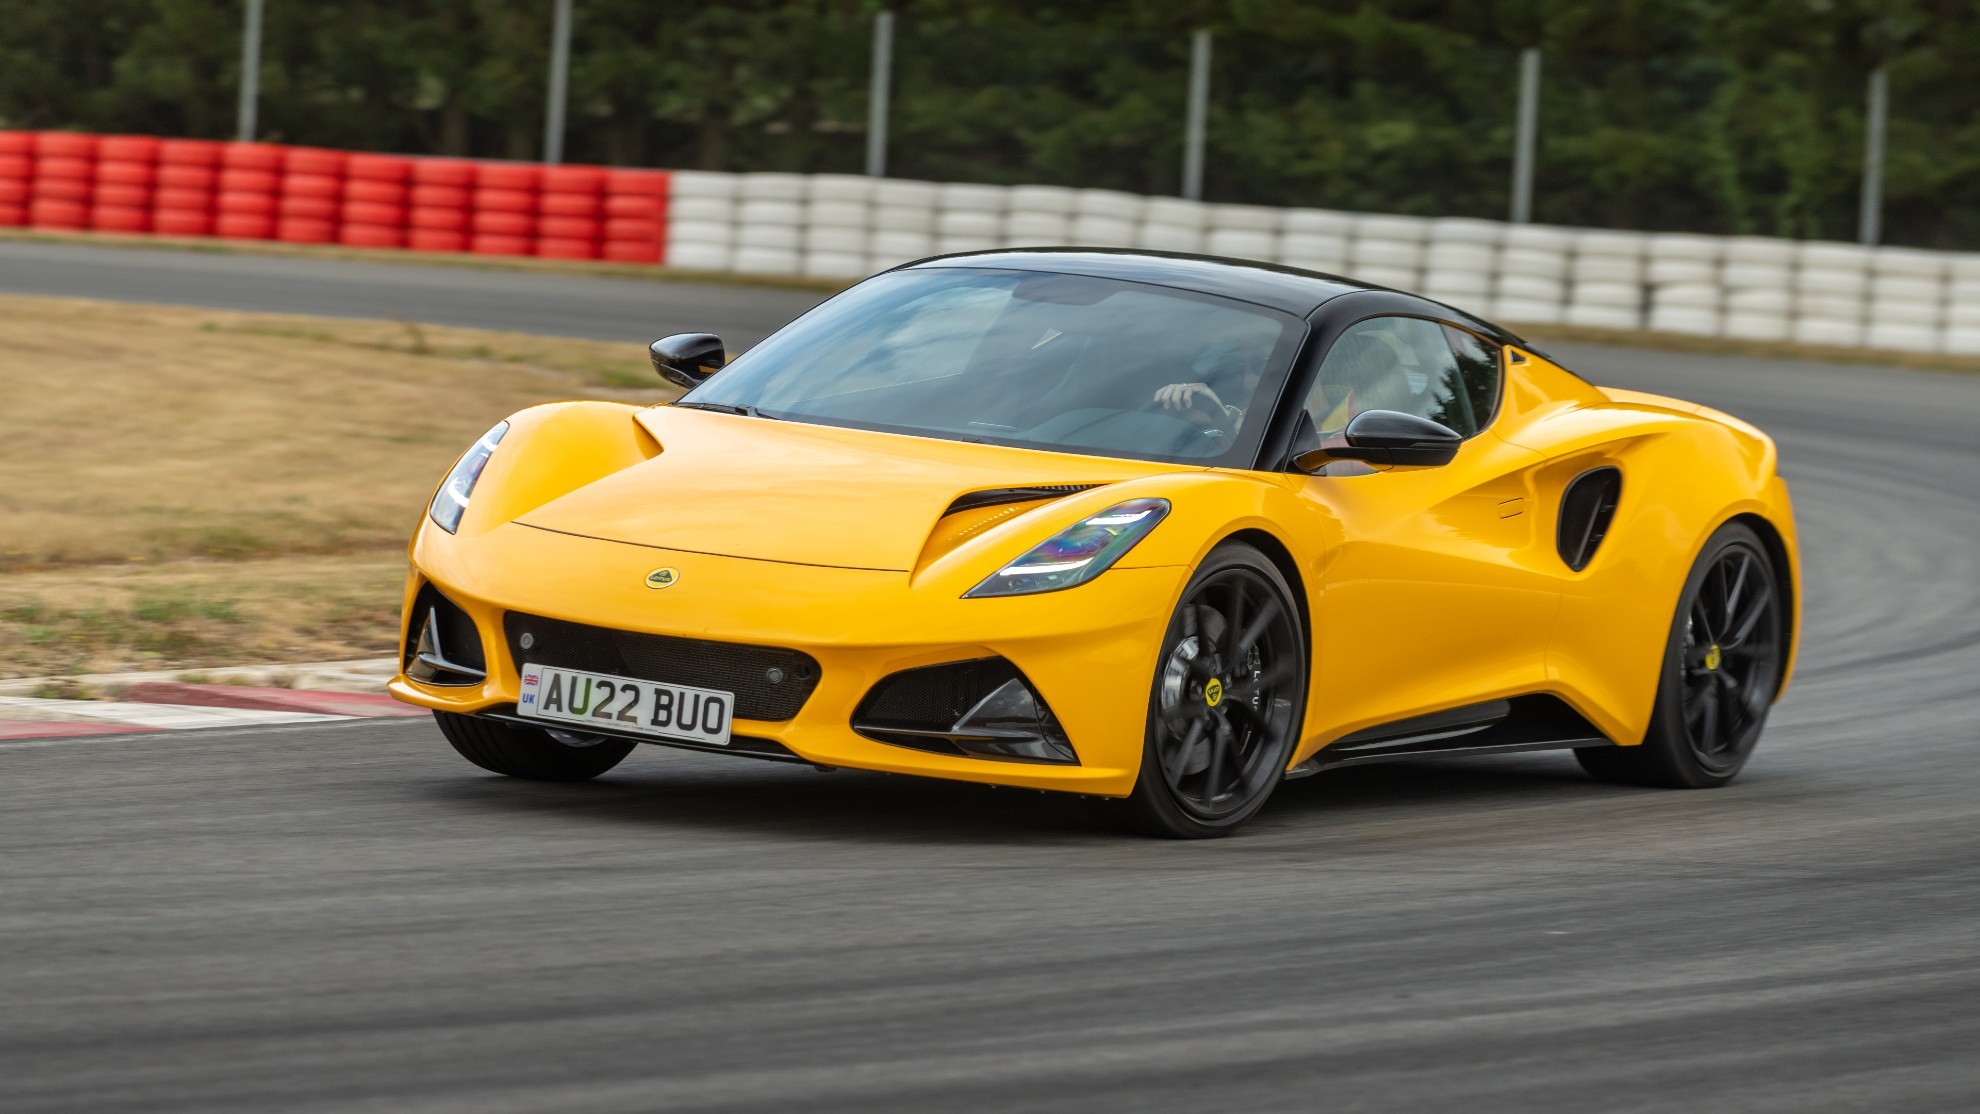 Aunque es algo más pesado, mantiene buena parte de la pureza de conducción de los Lotus.